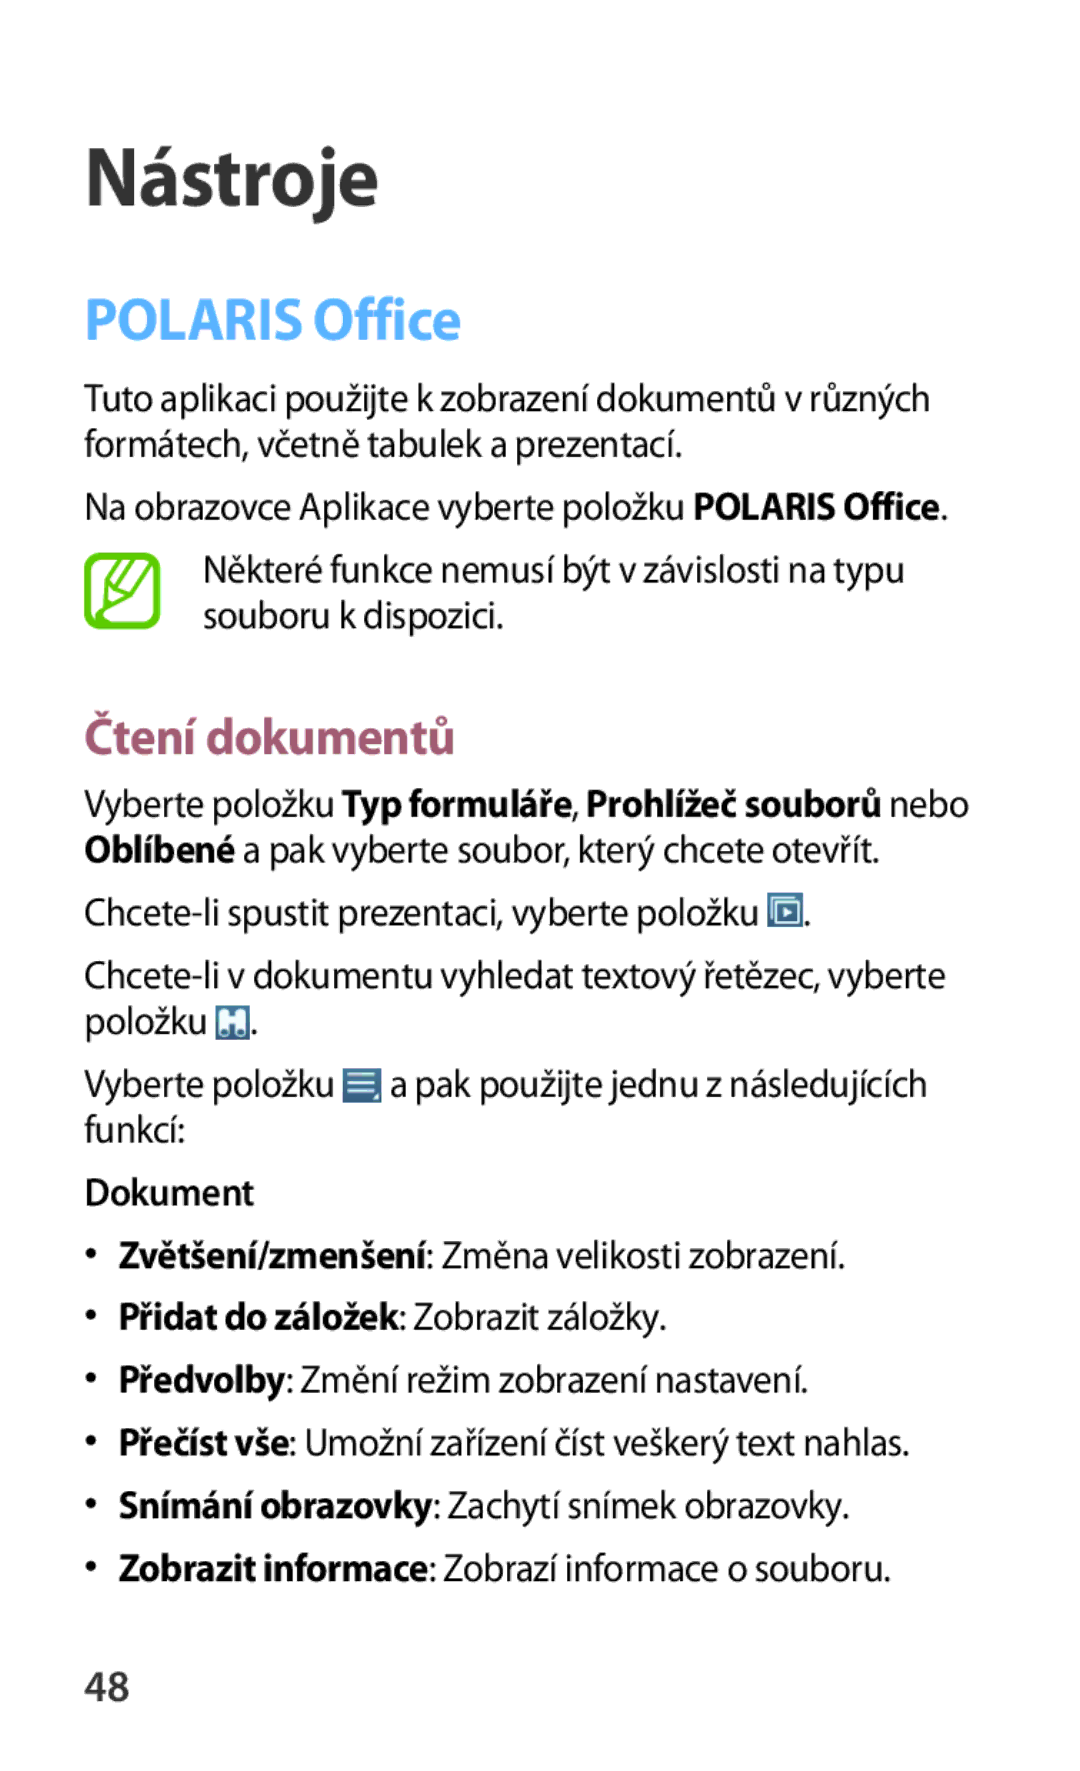 Samsung GT-B9150ZKAETL manual Nástroje, Polaris Office, Čtení dokumentů, Dokument 